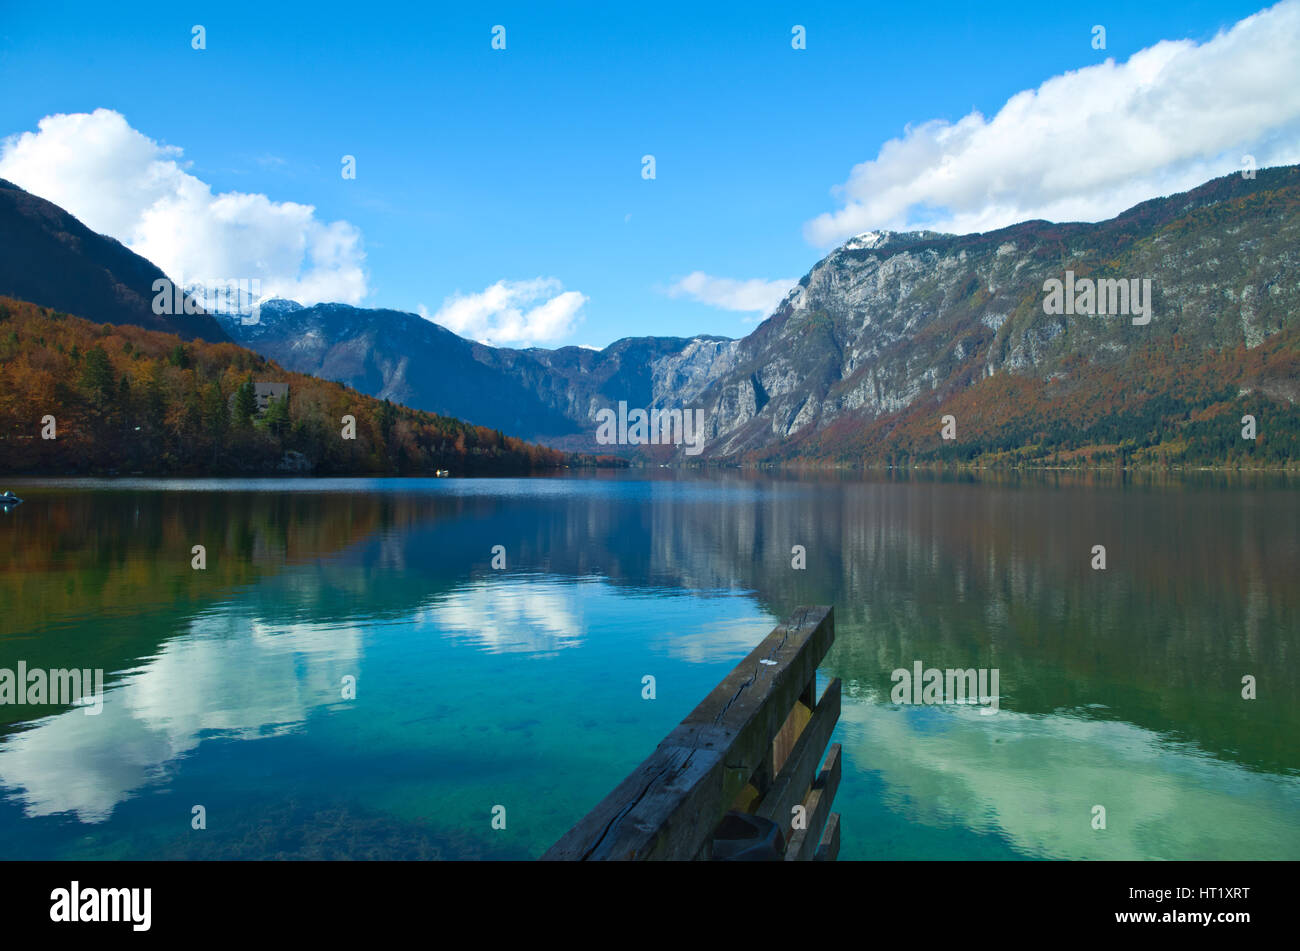 Autumn view of the Bohinj Lake (Bohinjsko jezero), Slovenia Stock Photo